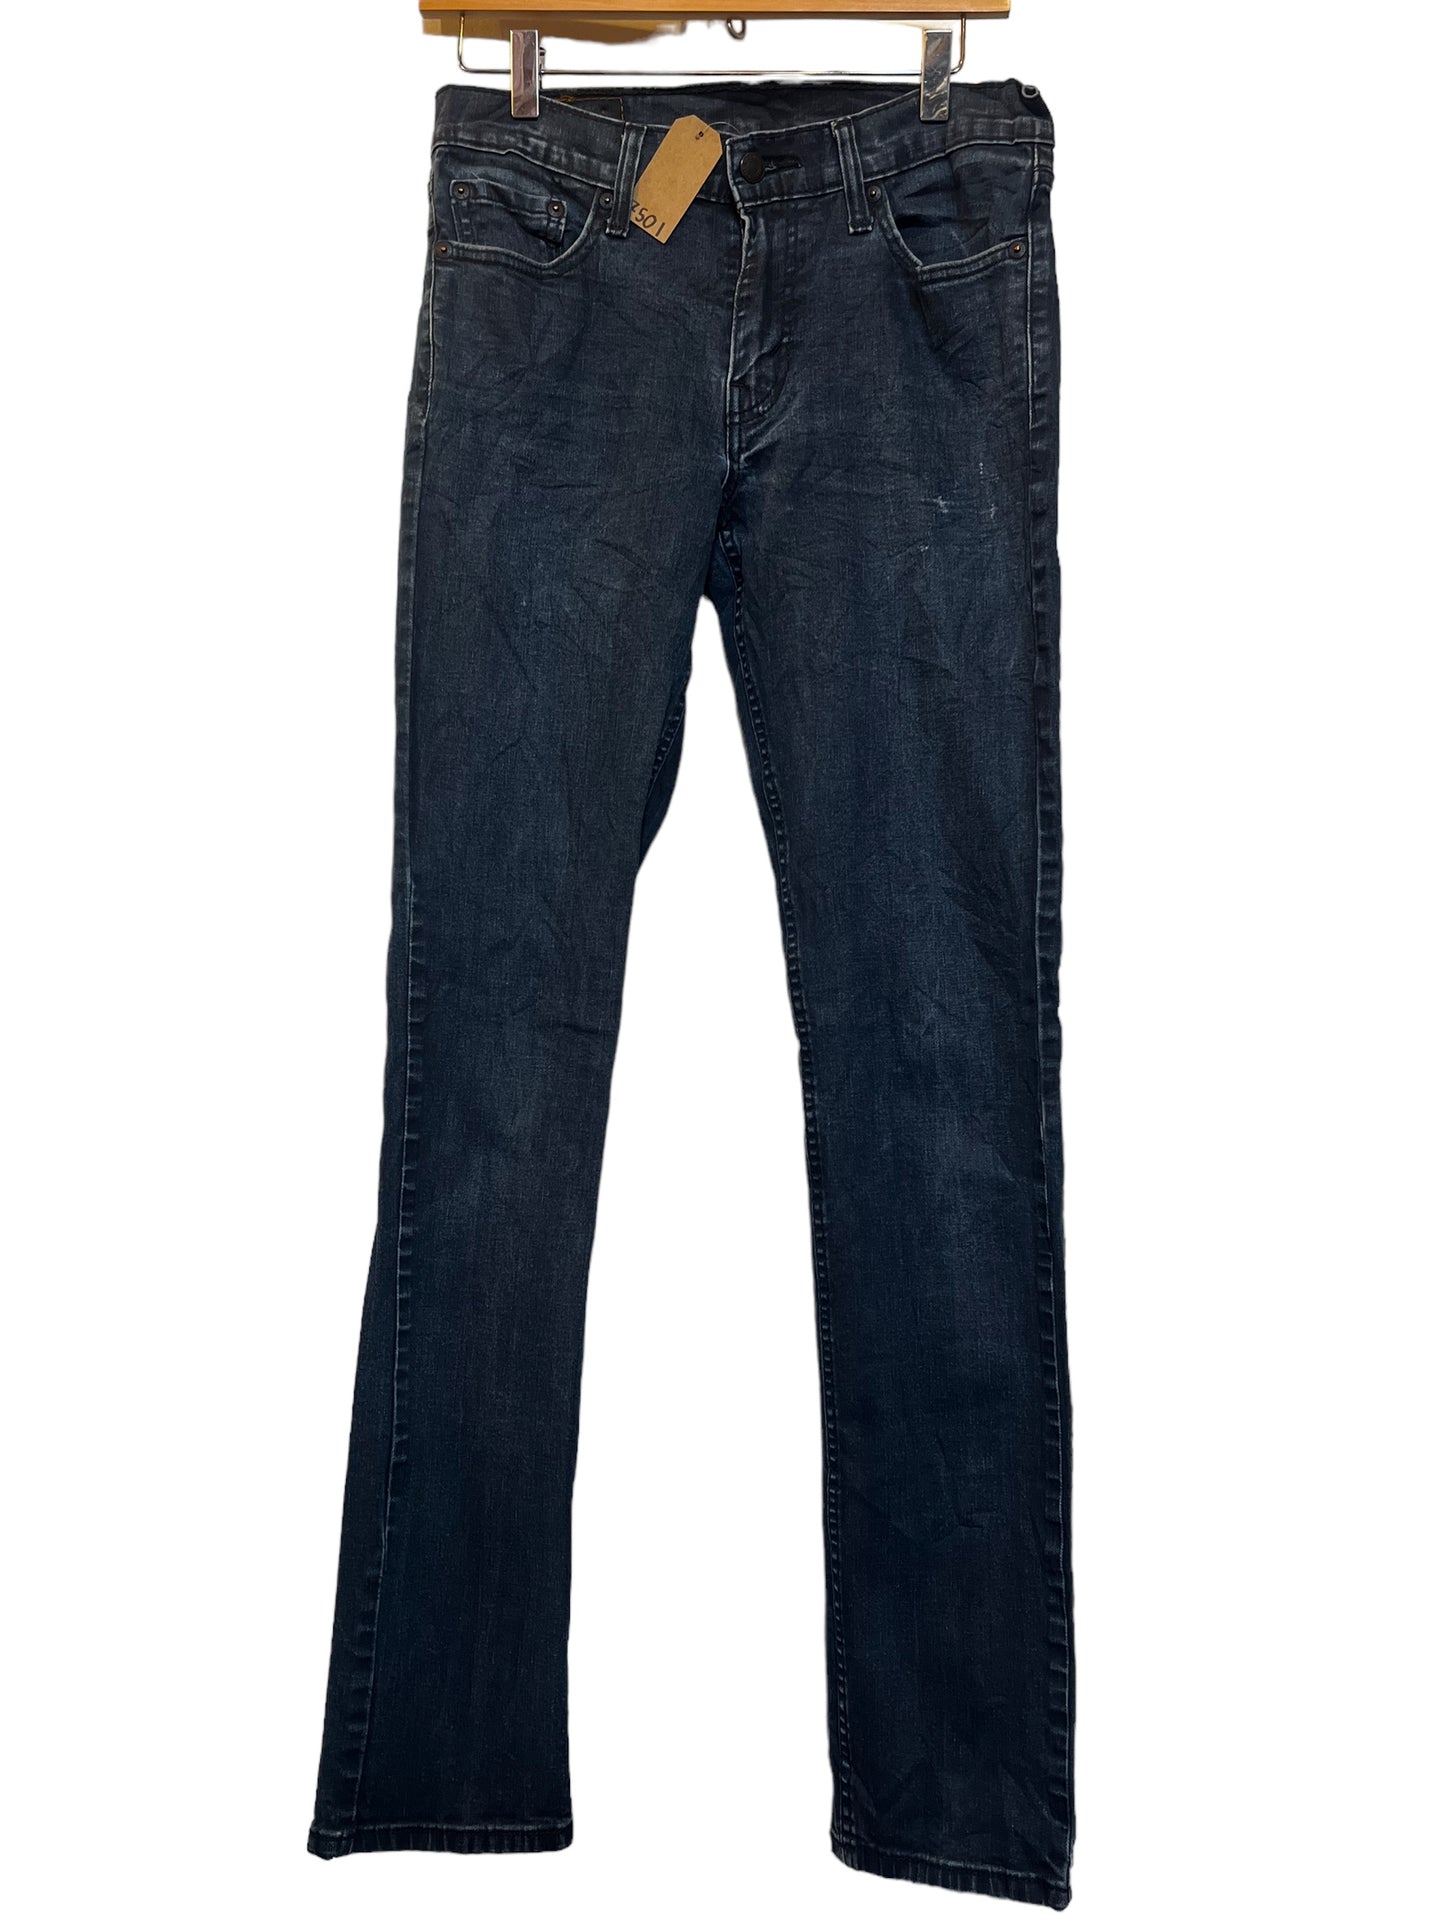 Levi 511 Jeans Size (30x36)